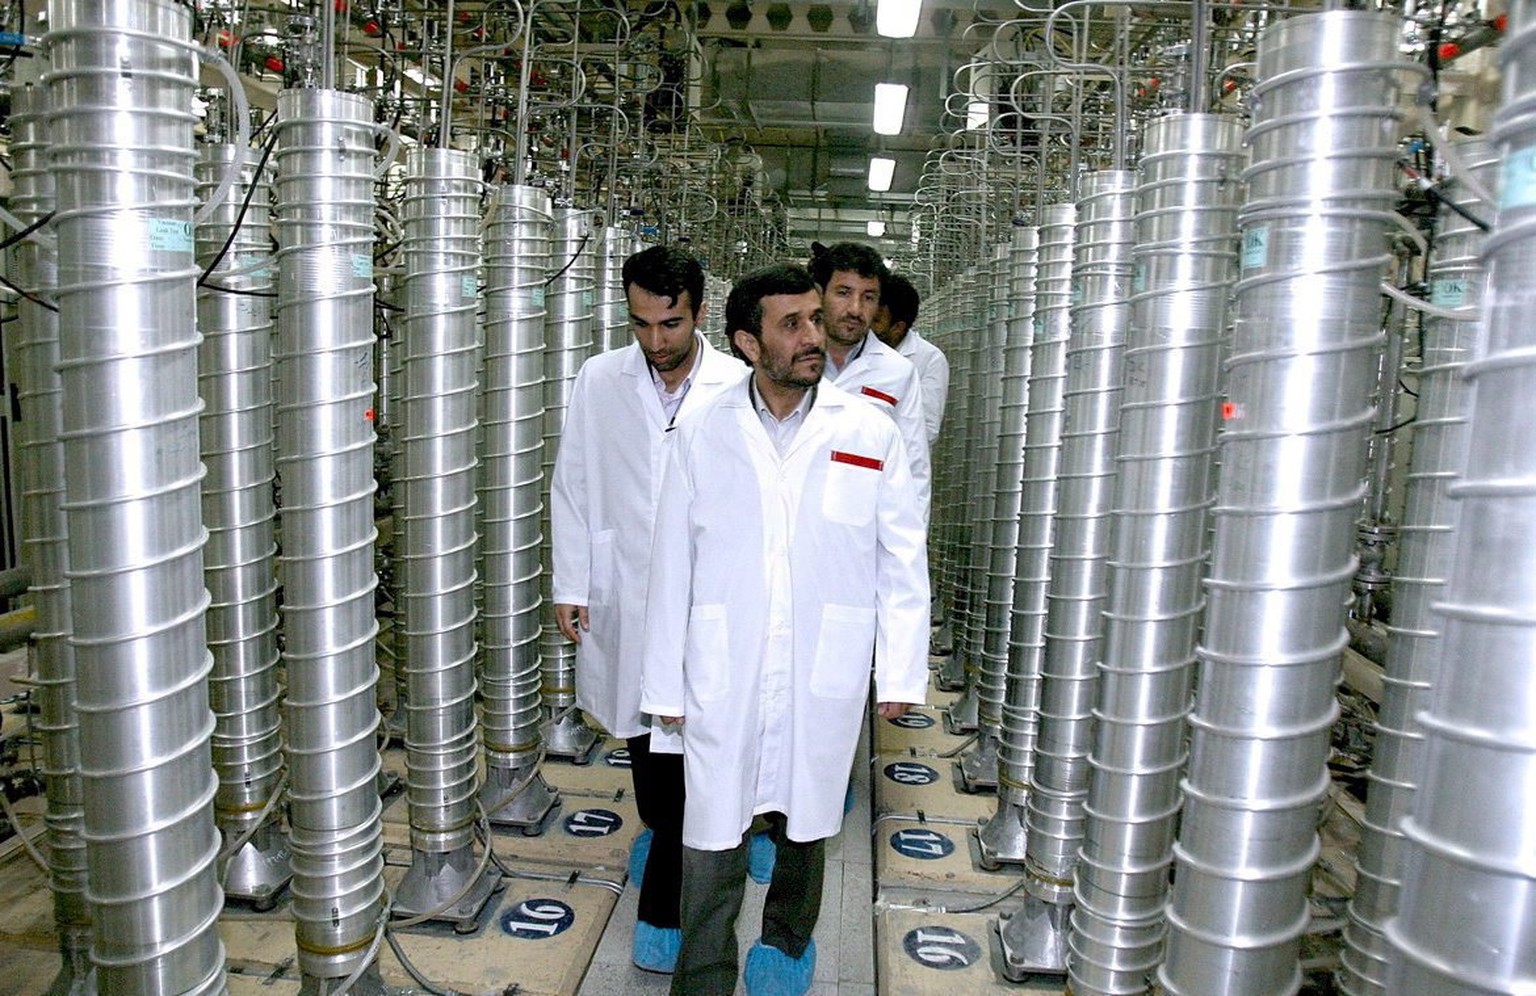 Mahmud Ahmadinedschad besichtigt die Zentrifugen, die zur Uran-Anreicherung dienen. Irgendwann spielen die Motoren verrückt – und die Ingenieure verzweifeln ... 